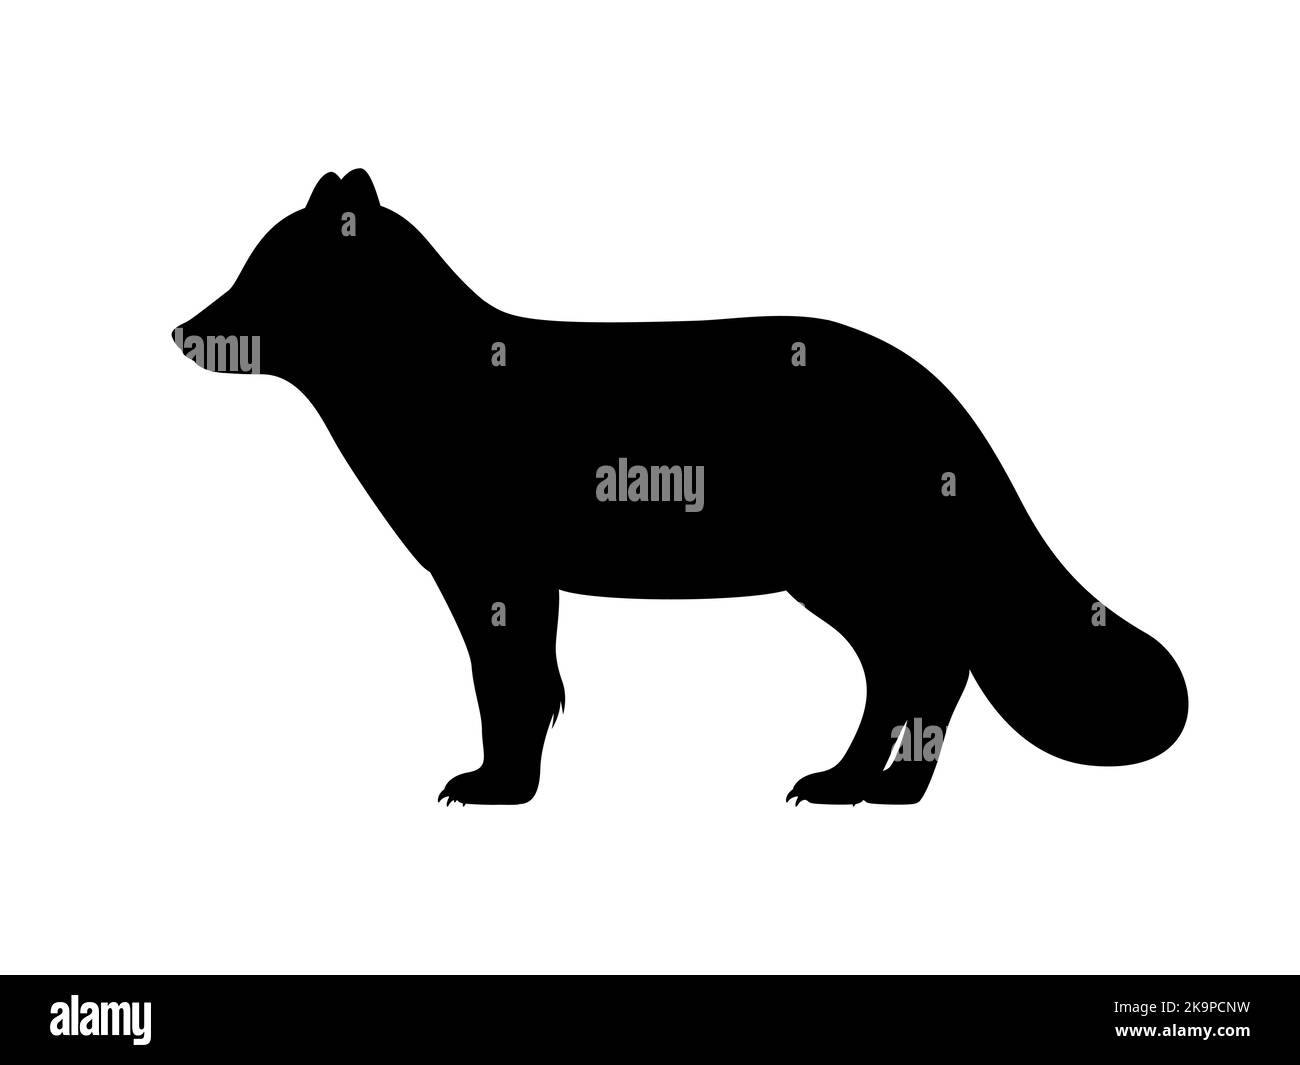 Silhouette des arktischen Fuchses. Vektor-Illustration schwarze Silhouette eines flauschigen nördlichen polaren arktischen Fuchs isoliert auf weiß. Logo-Symbol, Seitenansicht. Stock Vektor